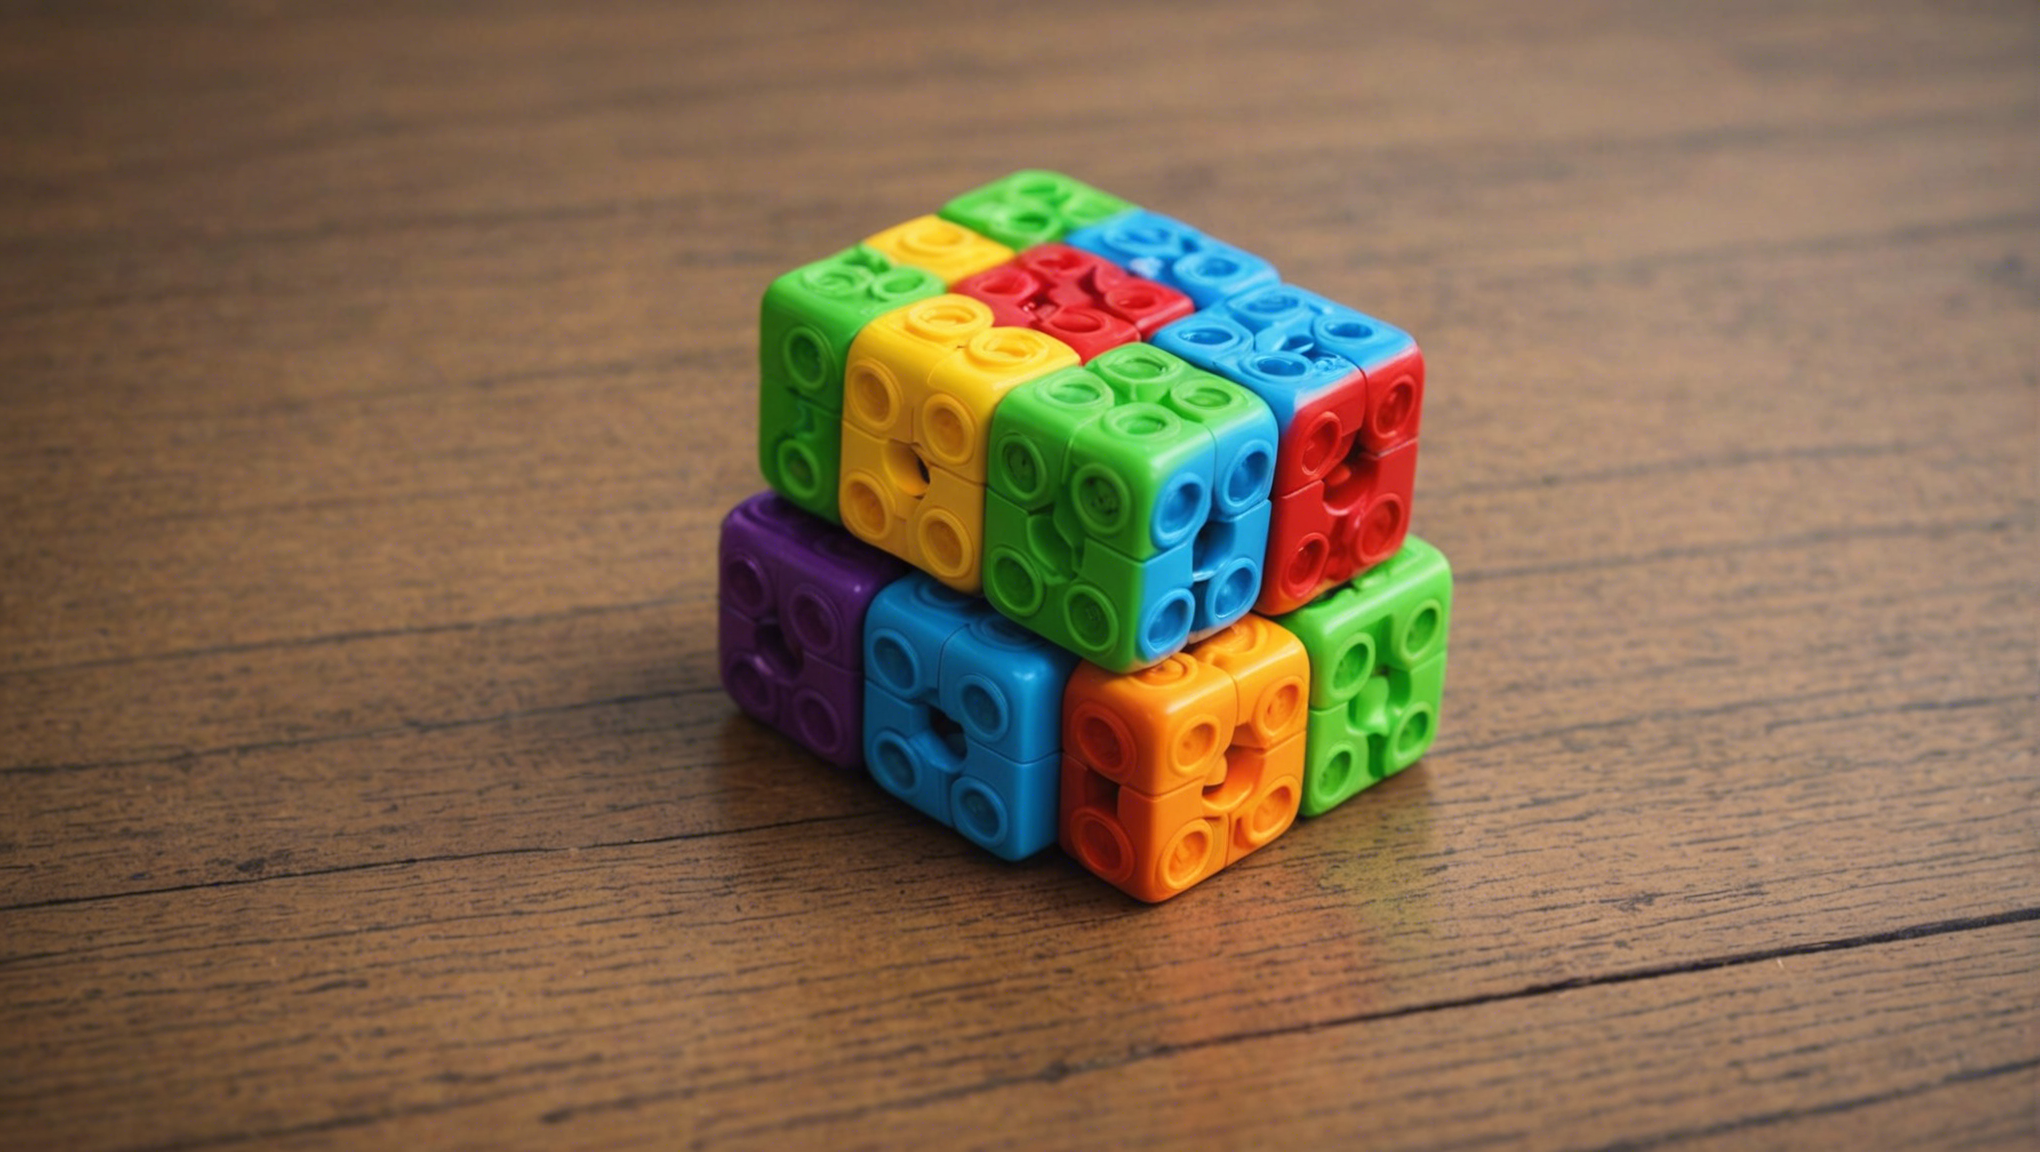 découvrez cubelets, une révolution dans le monde des jouets avec ses innovations exceptionnelles. des heures de jeu créatif en perspective !